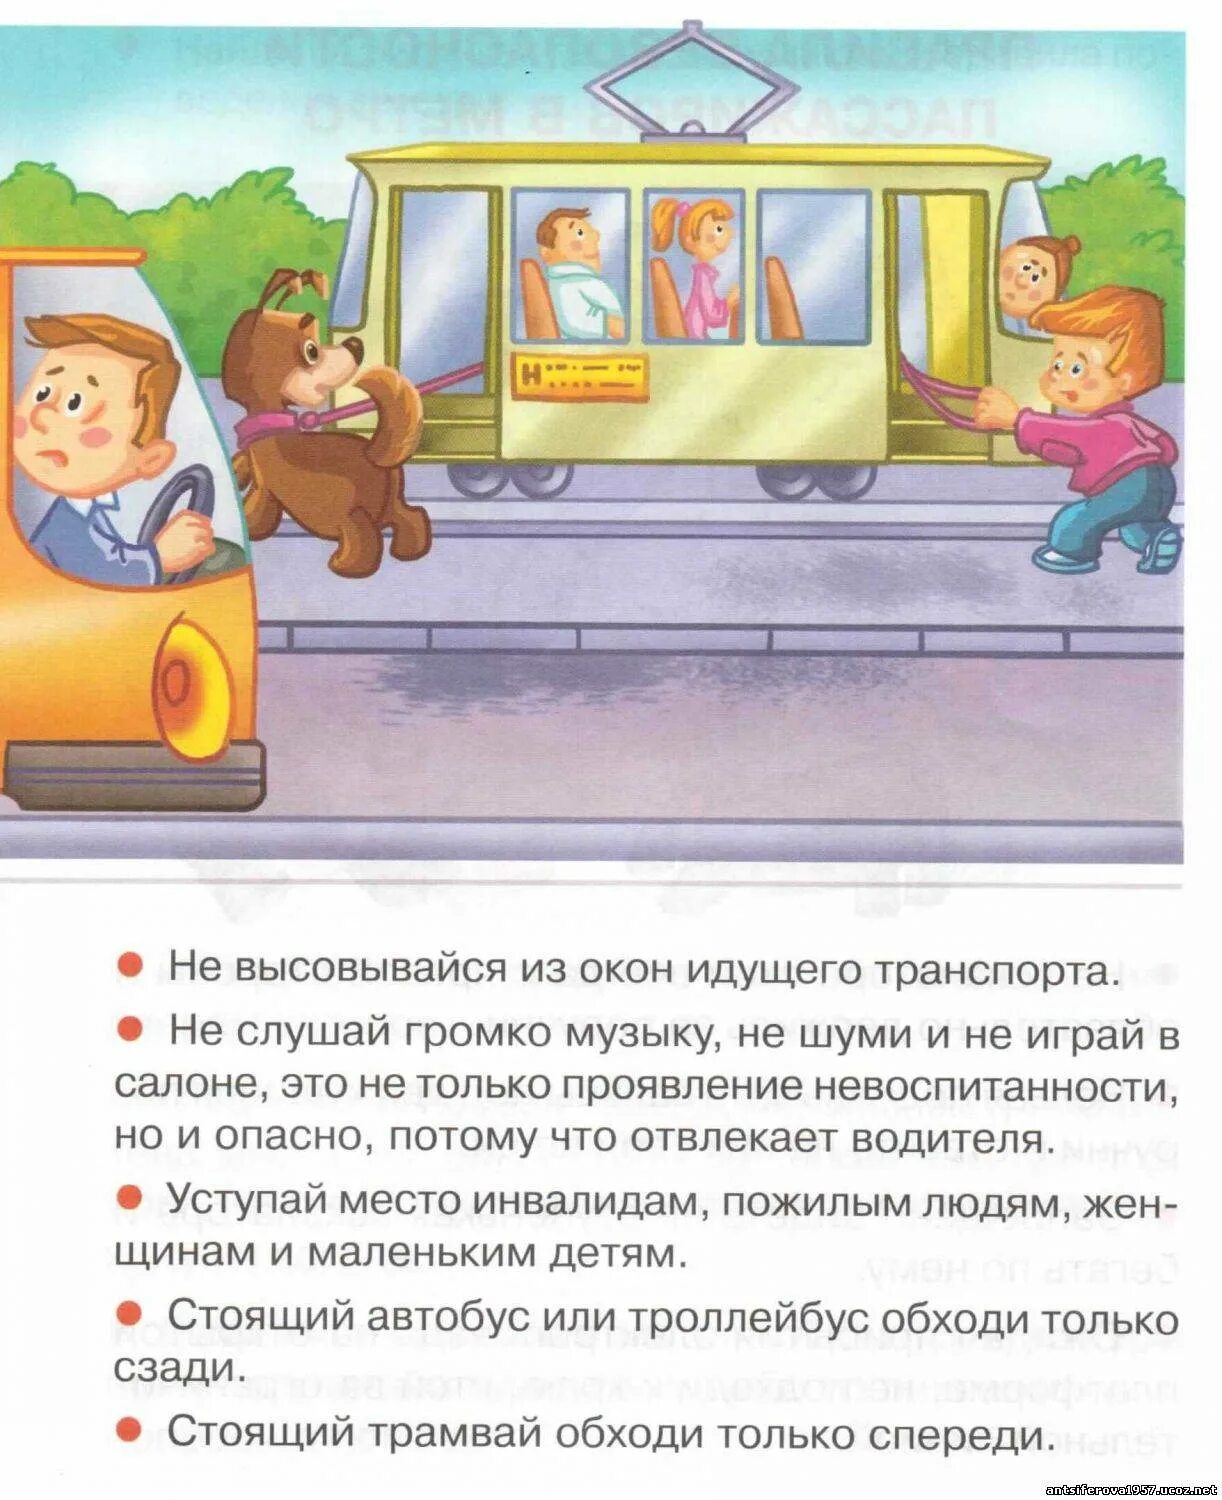 Правила поведения в общественном транспорте. Безопасность пассажира в общественном транспорте. Безопасность детей в общественном транспорте. Поведение пассажиров в общественном транспорте.